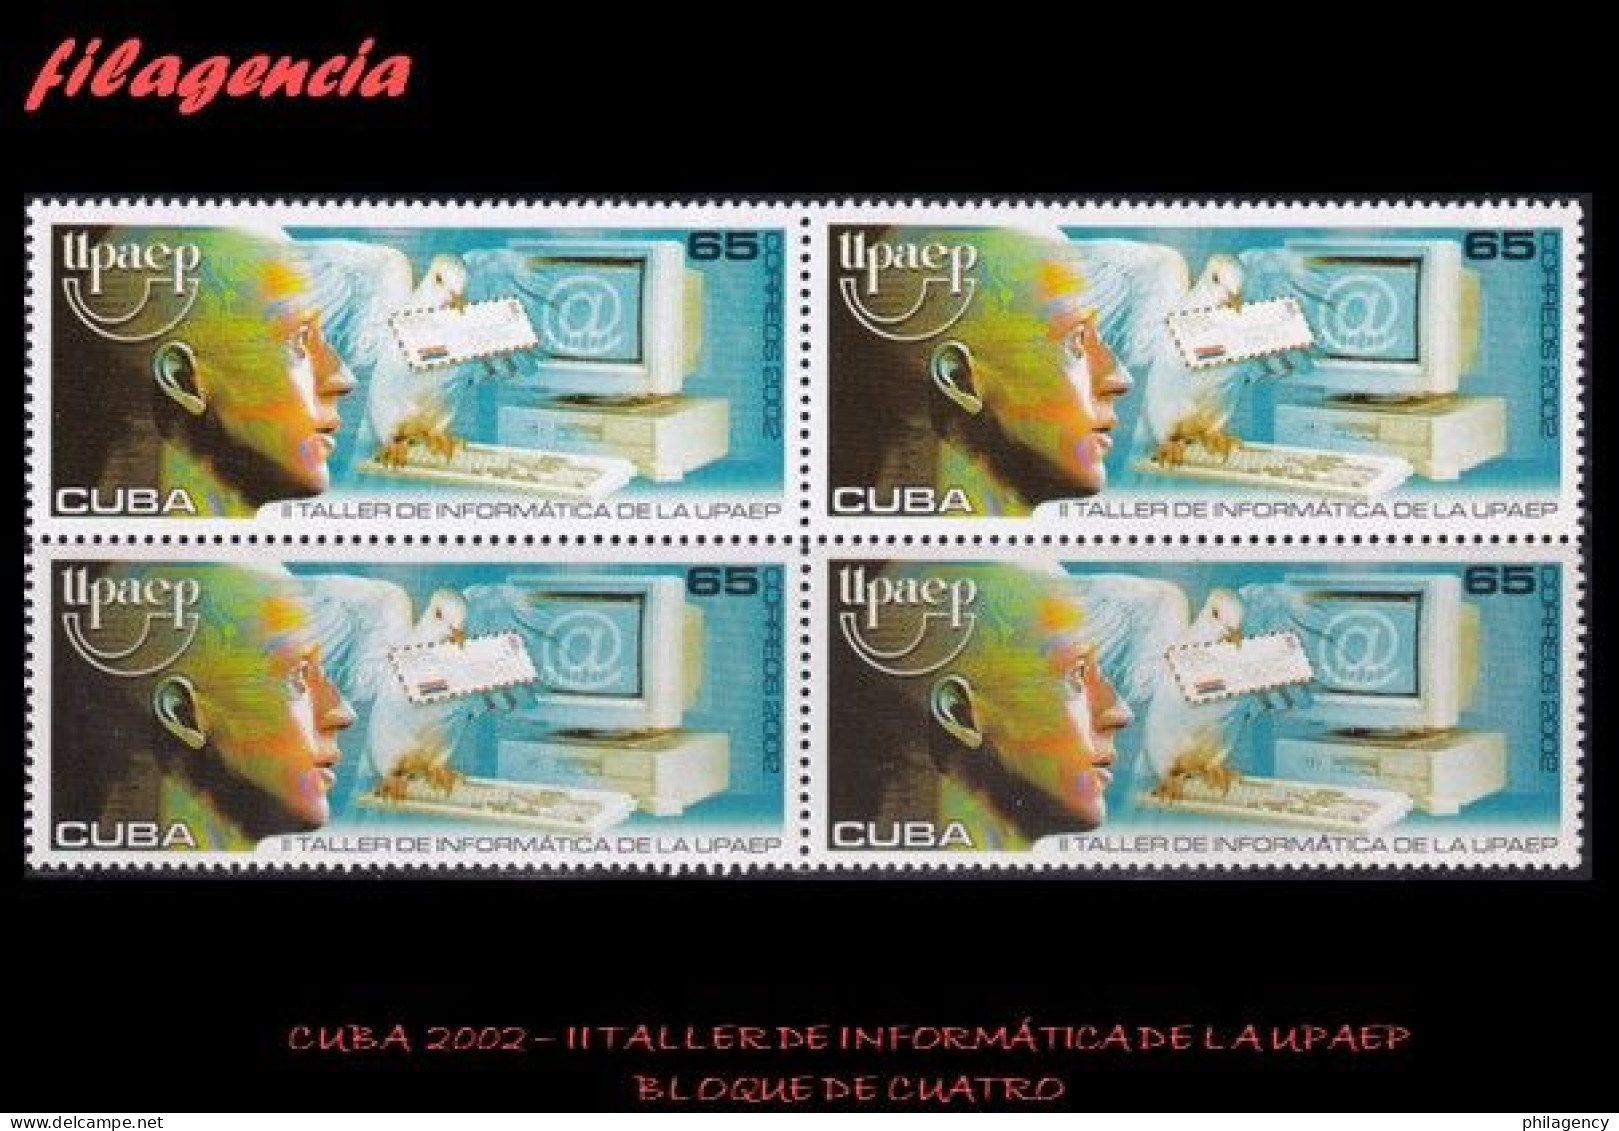 CUBA. BLOQUES DE CUATRO. 2002-03 II TALLER DE INFORMÁTICA DE LA UPAEP - Nuovi